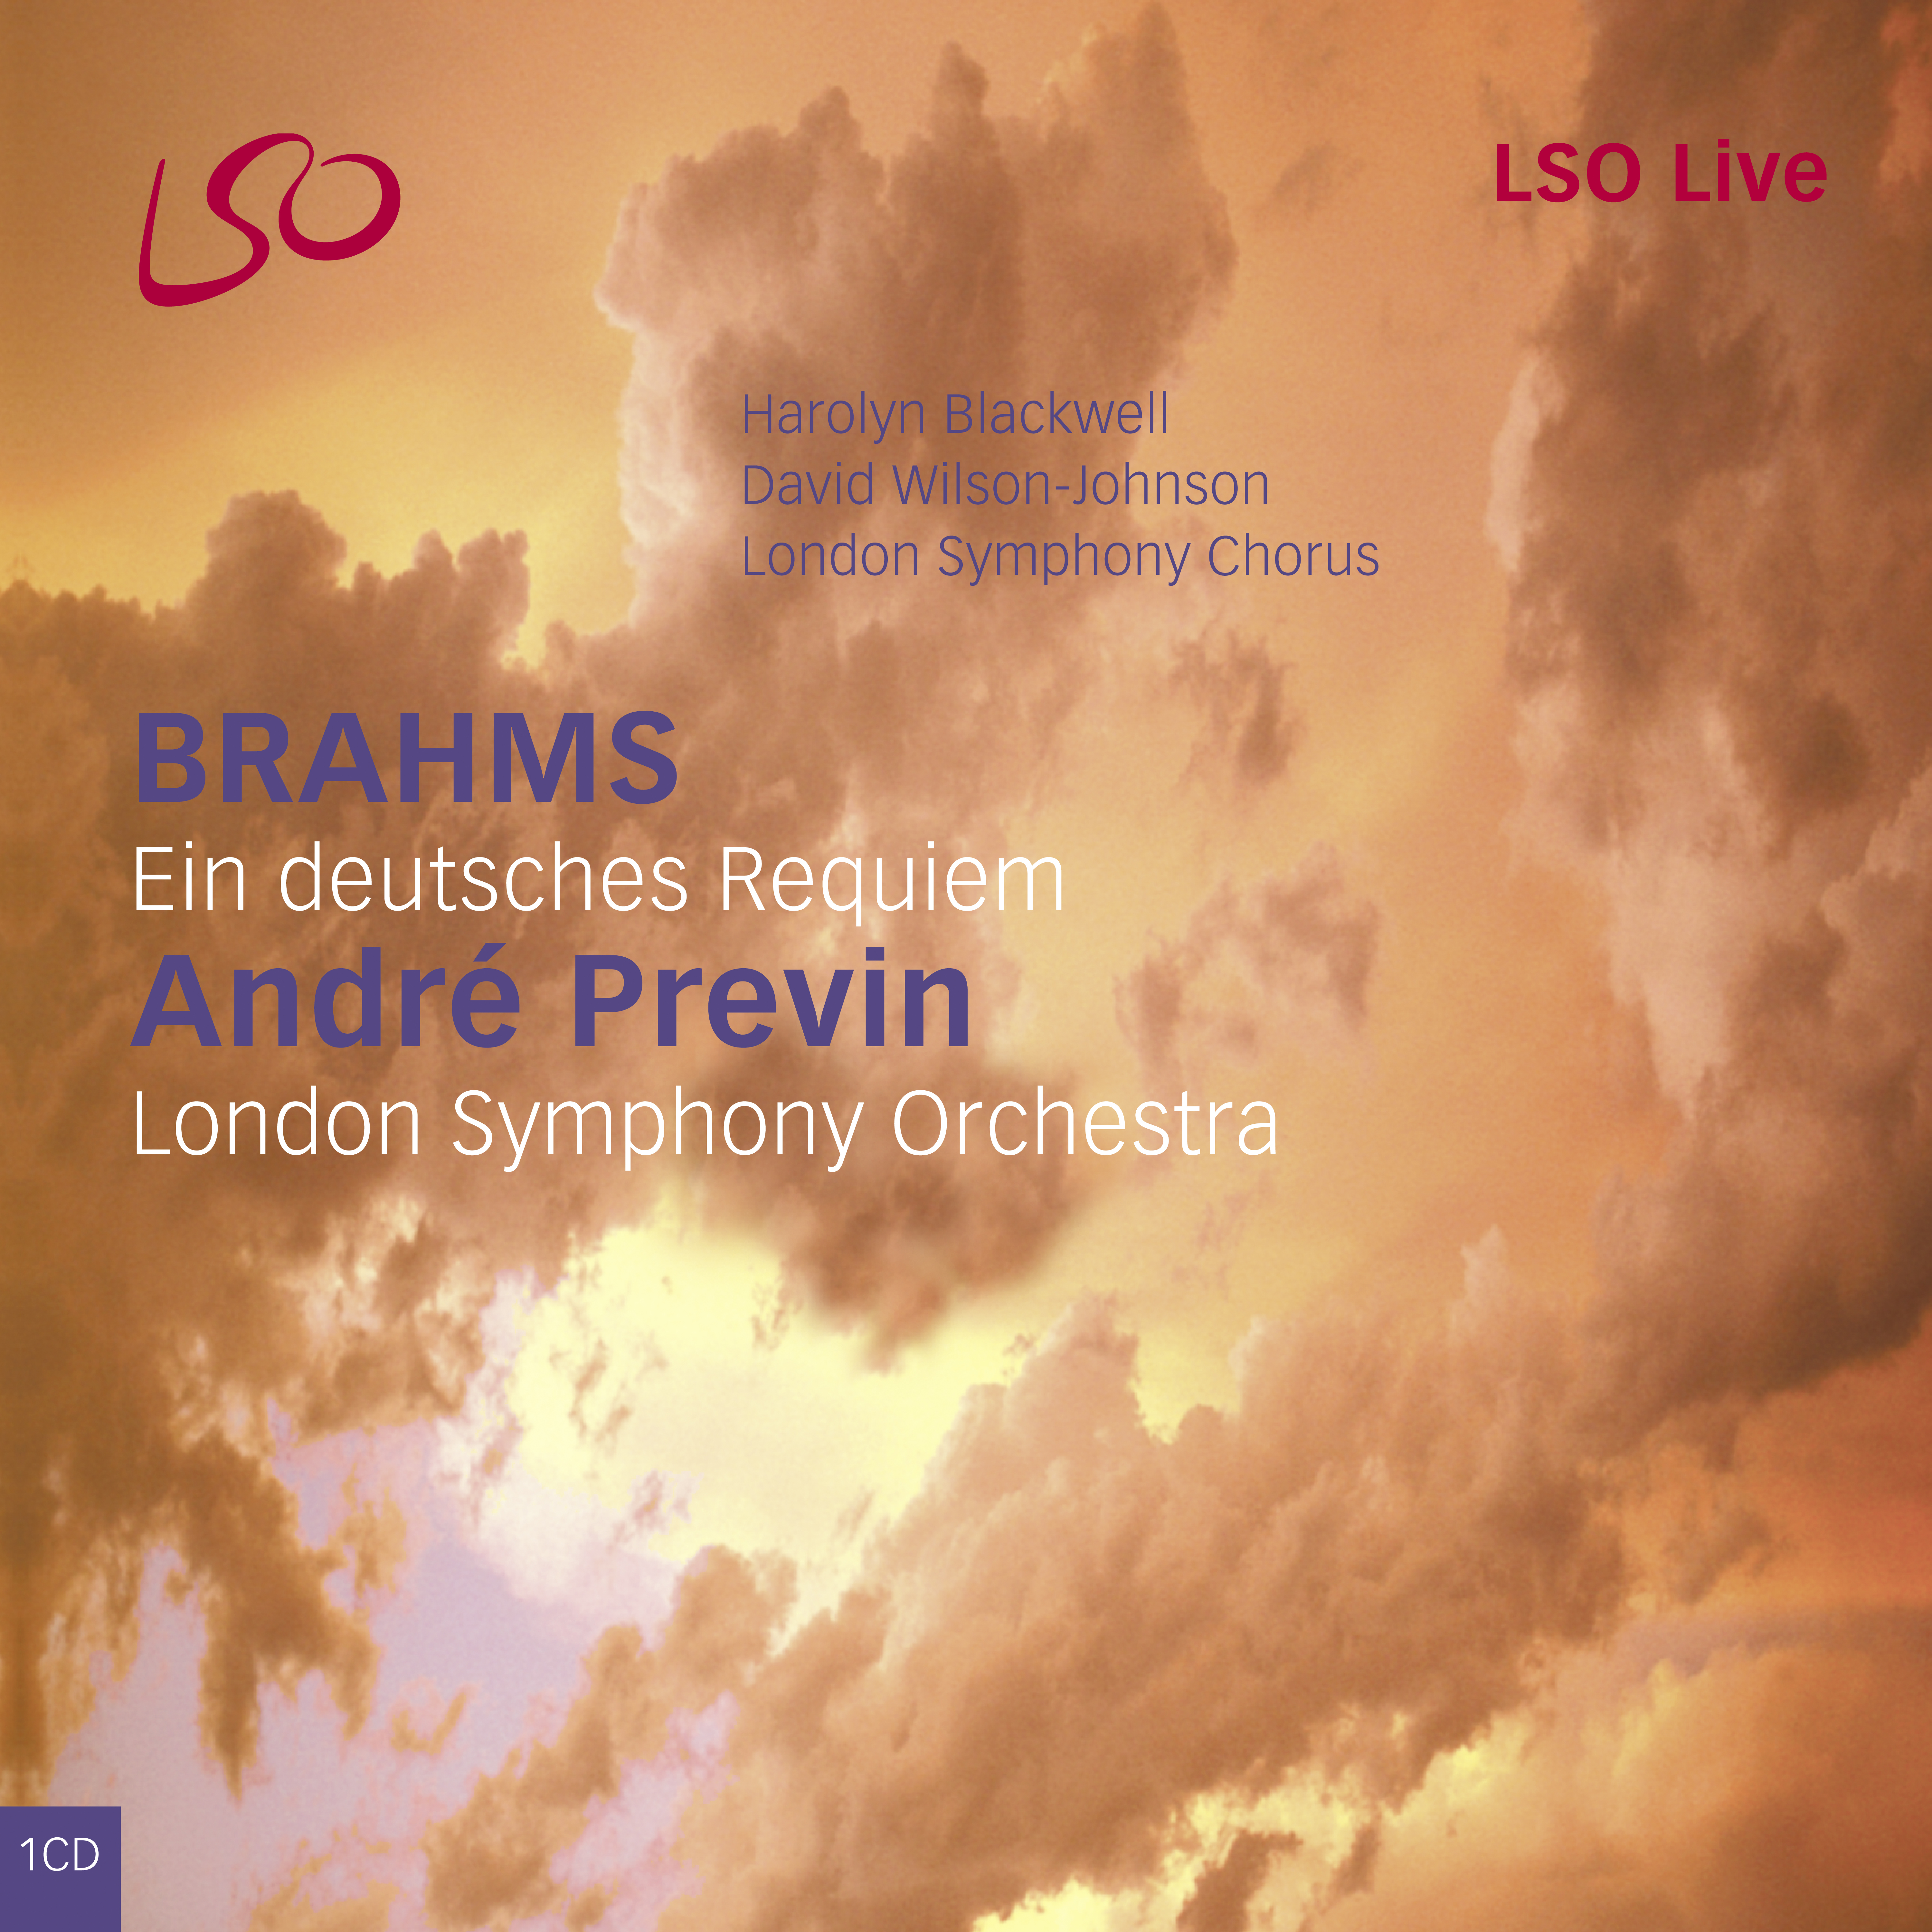 Brahms: Ein deutsches requiem